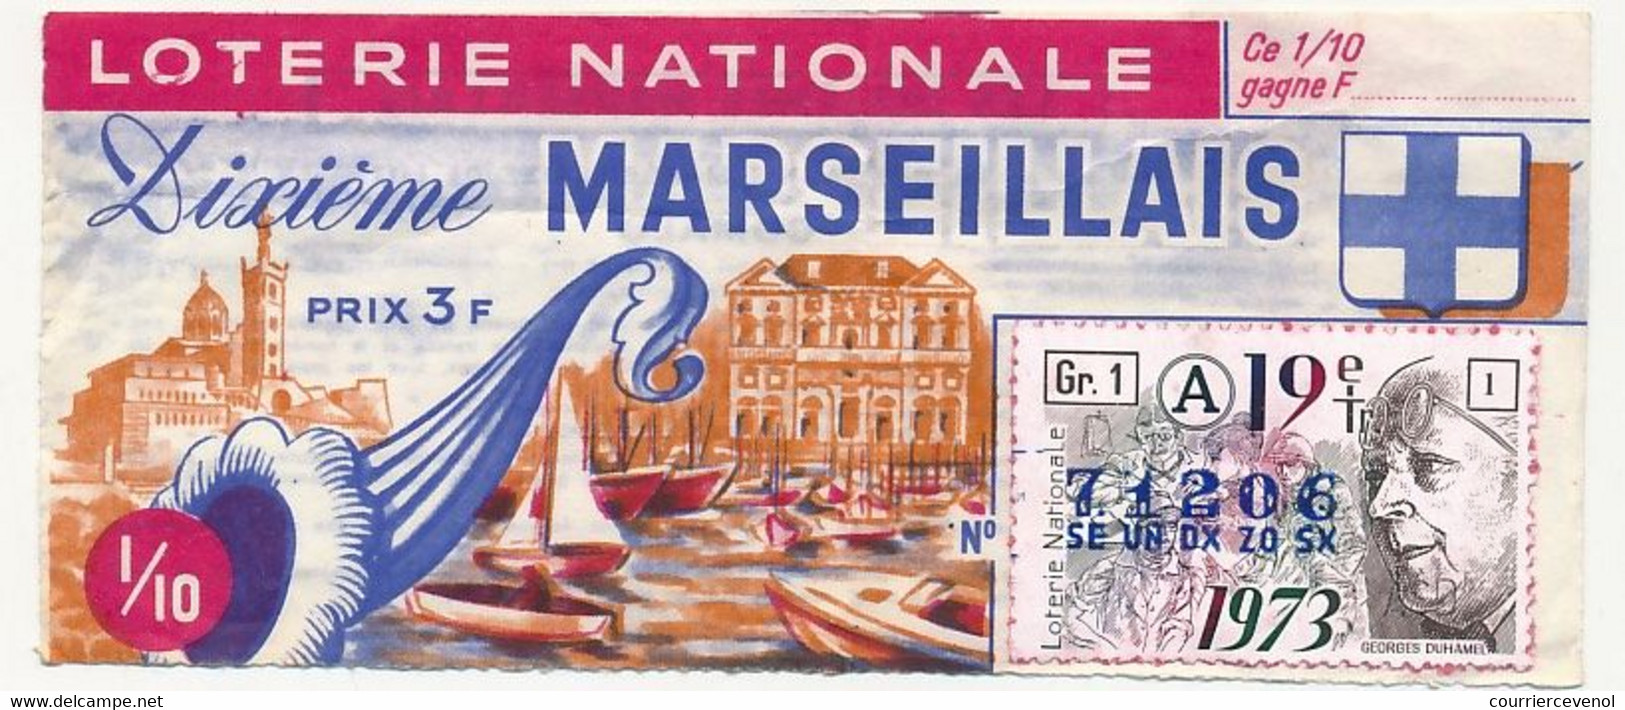 FRANCE - Loterie Nationale - 1/10ème - Dixième Marseillais - 19eme Tranche - 1973 - Billets De Loterie